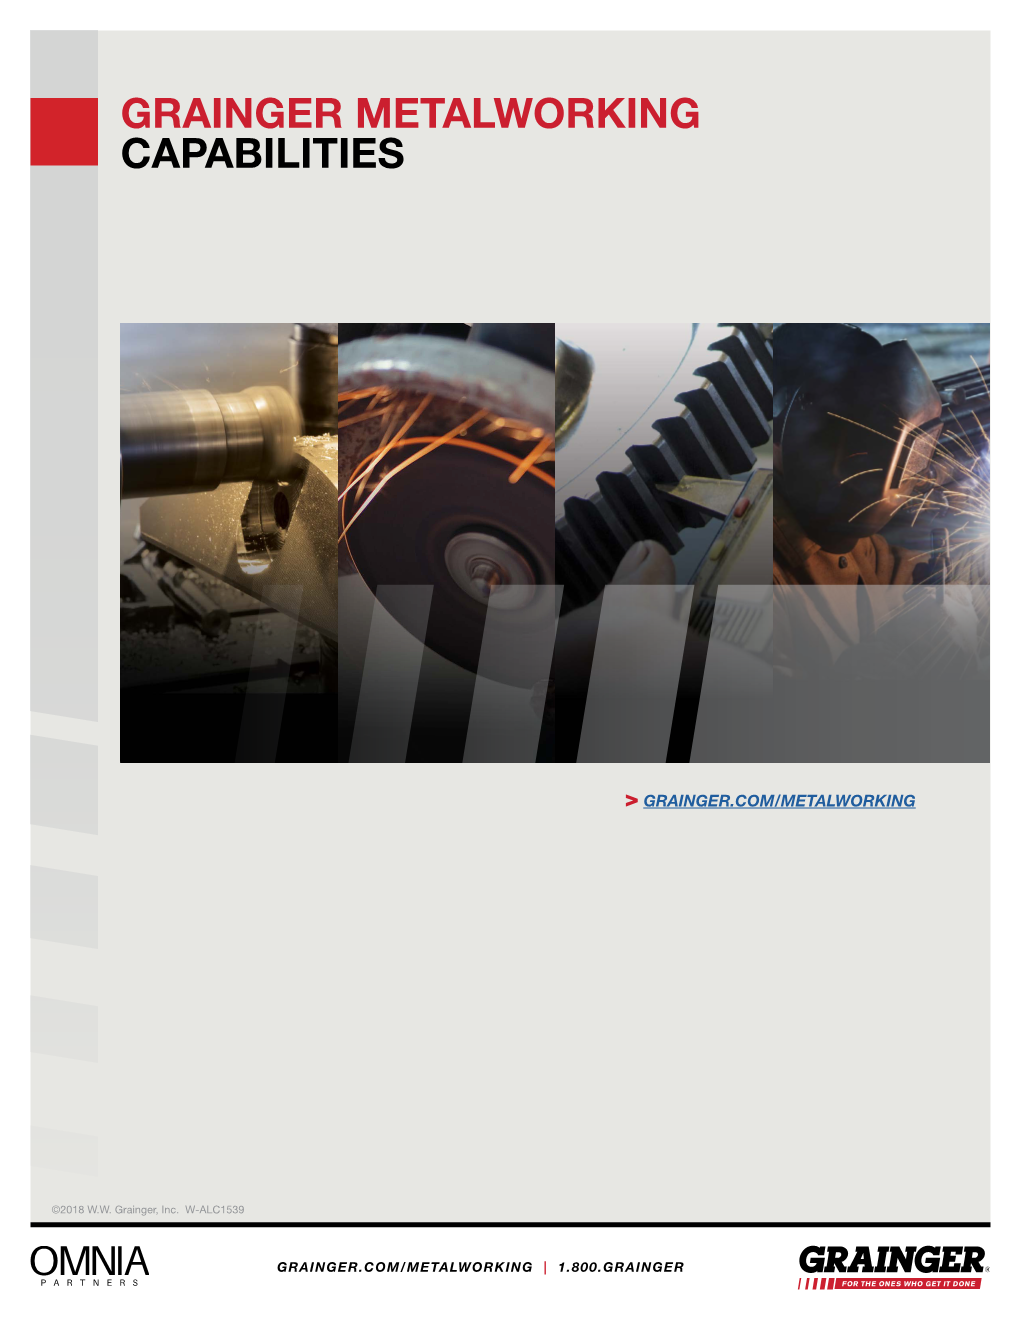 Grainger Metalworking Capabilities